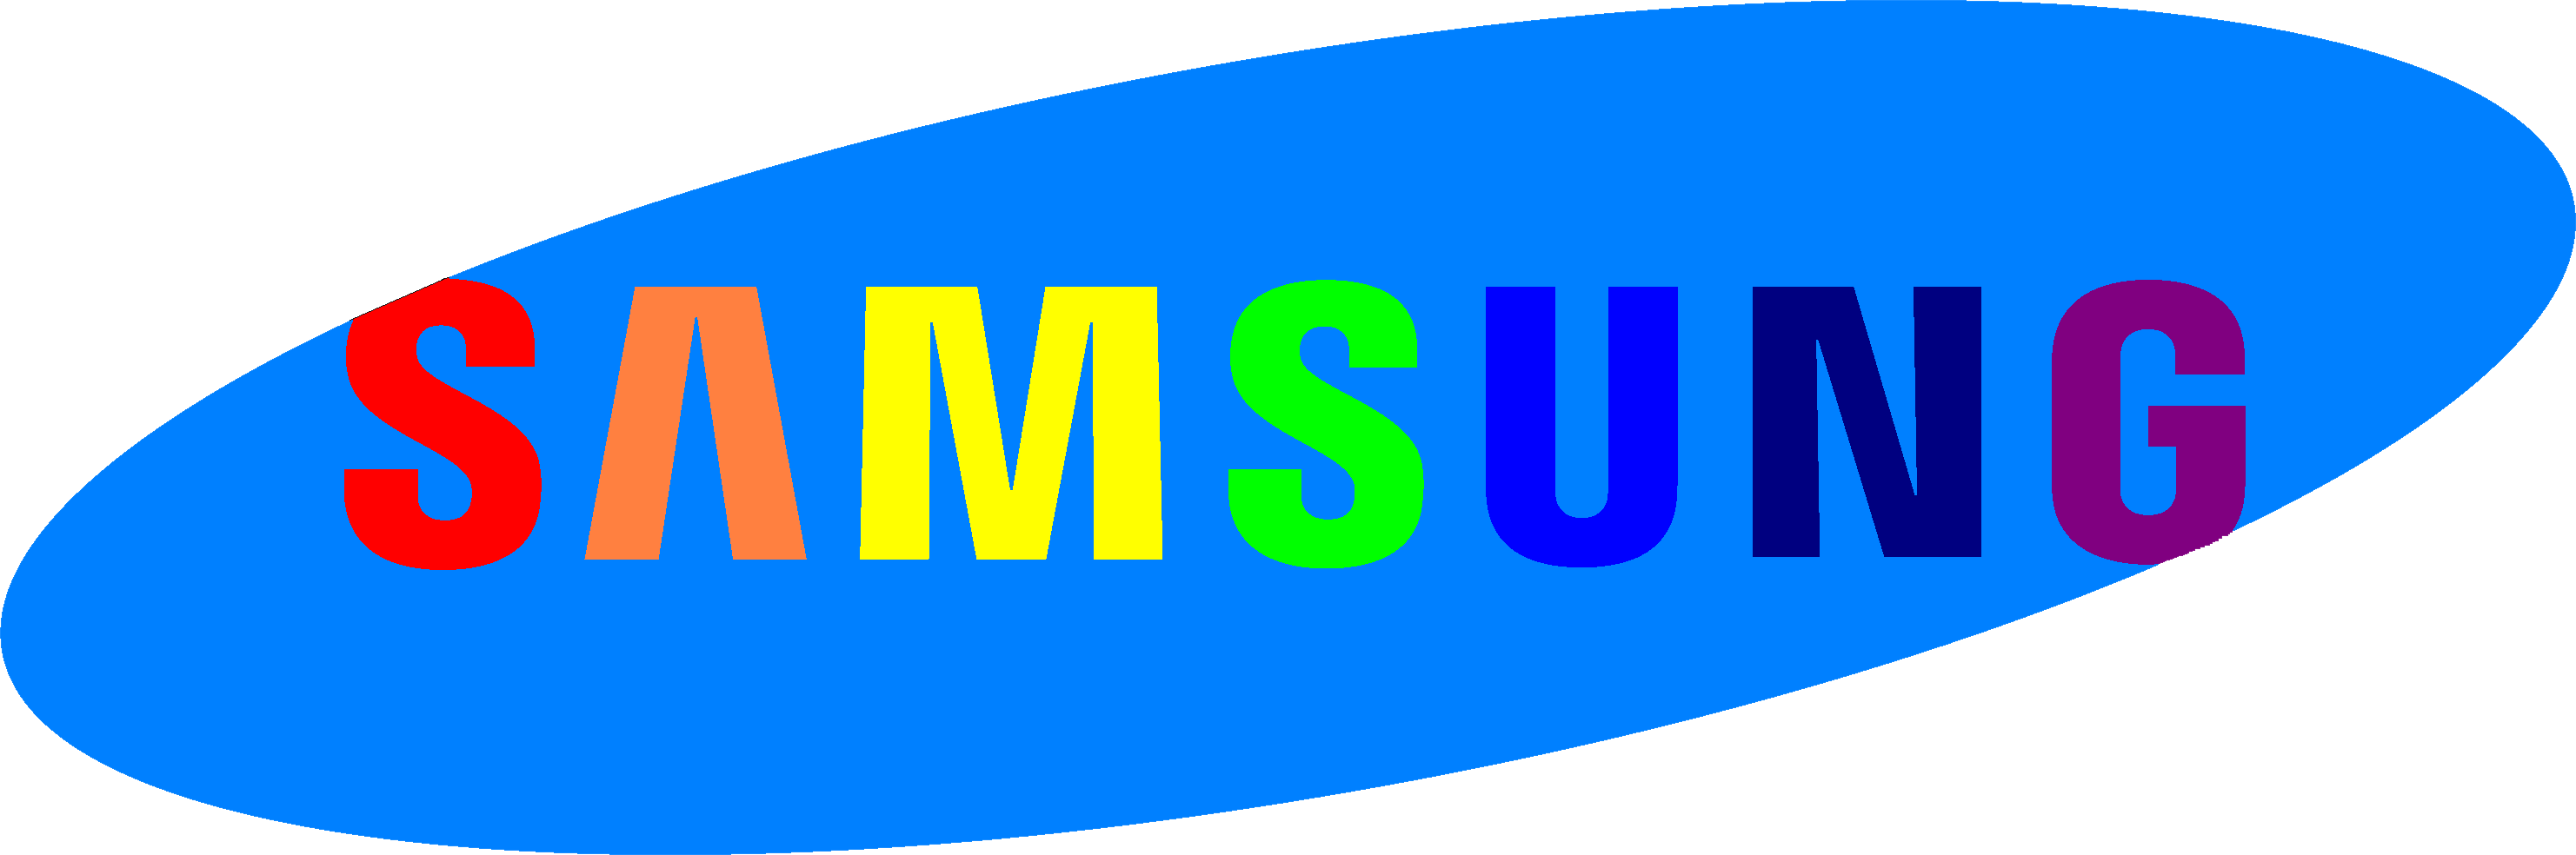 Samsung Logo - Samsung logo PNG images